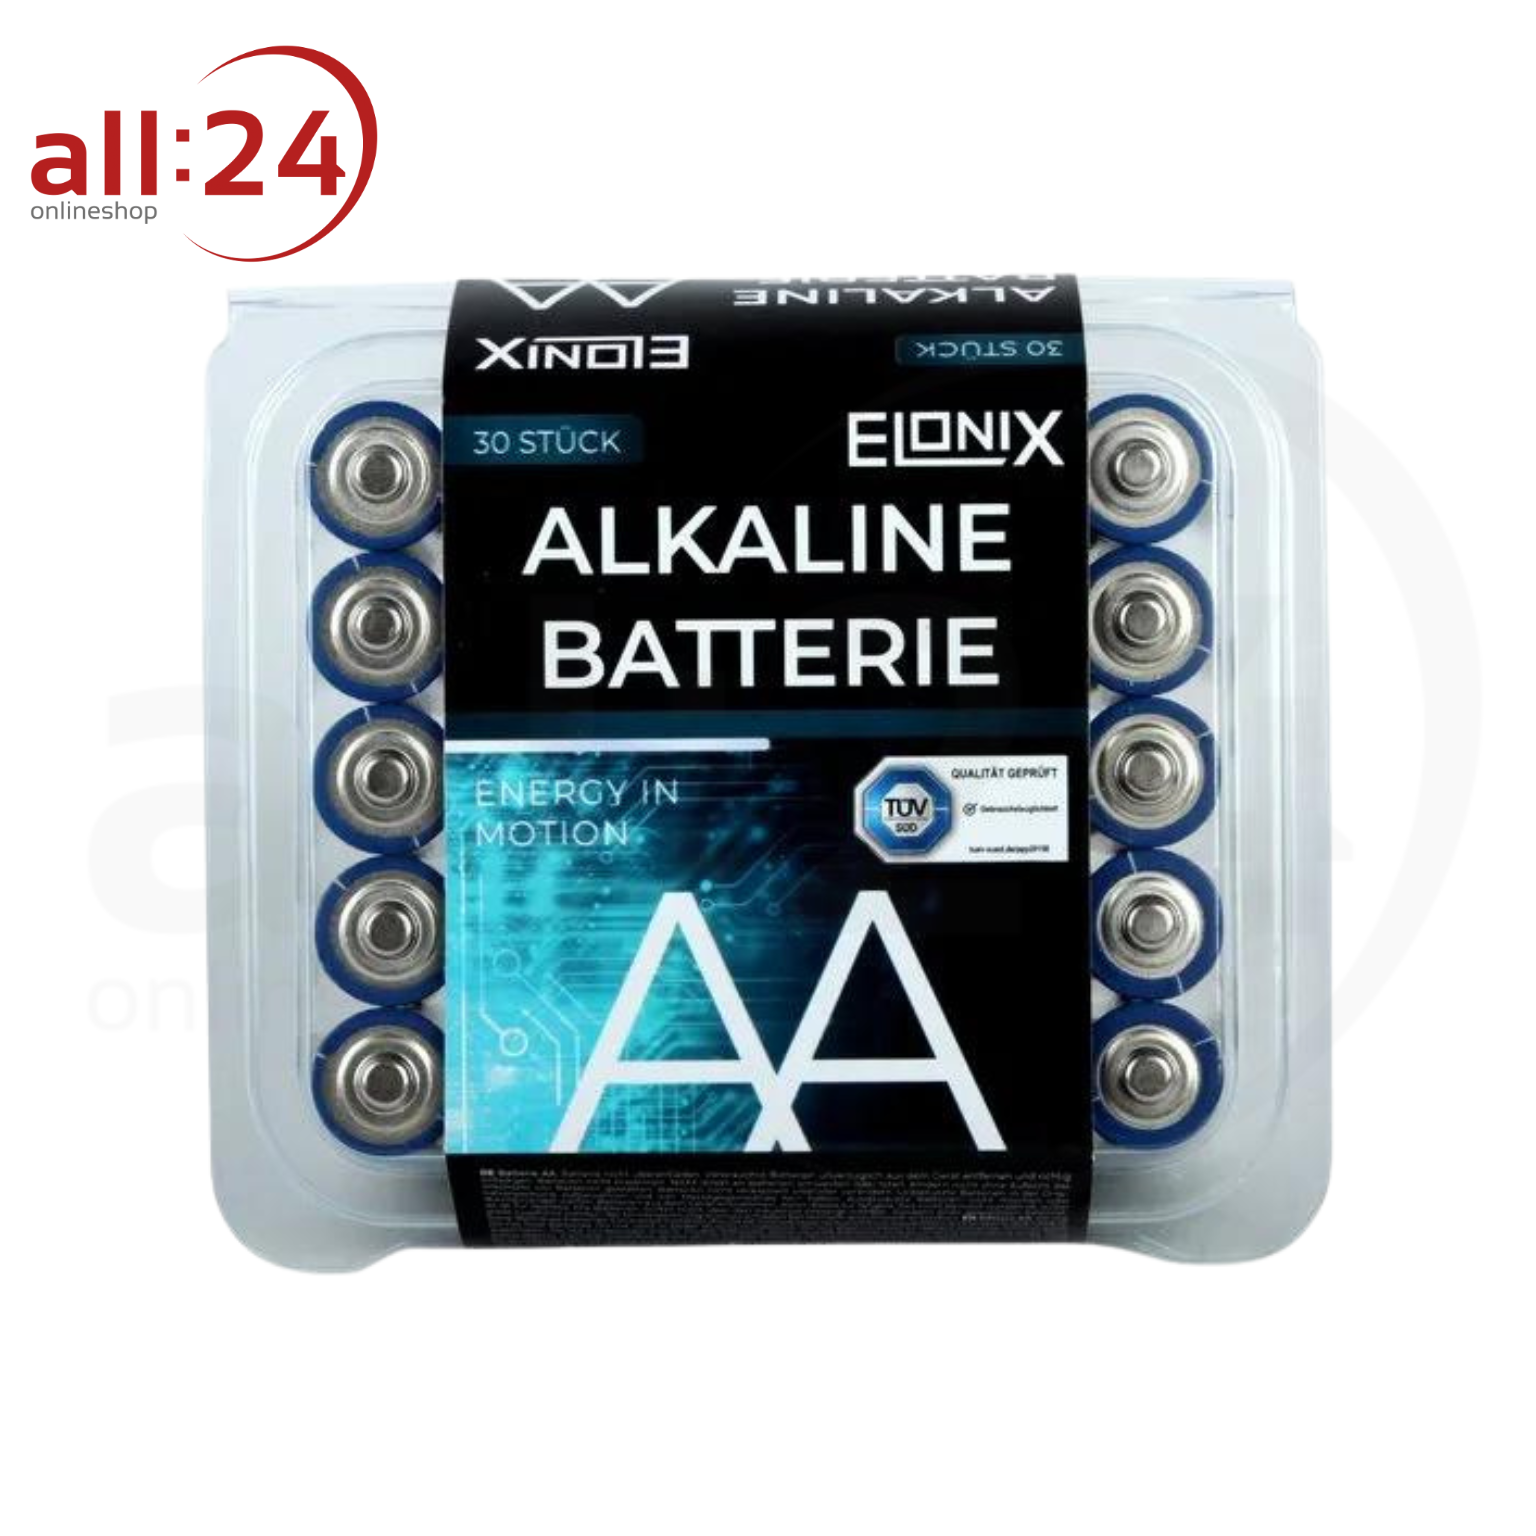 ELONIX Alkaline Batterie AAA 30er Packung 